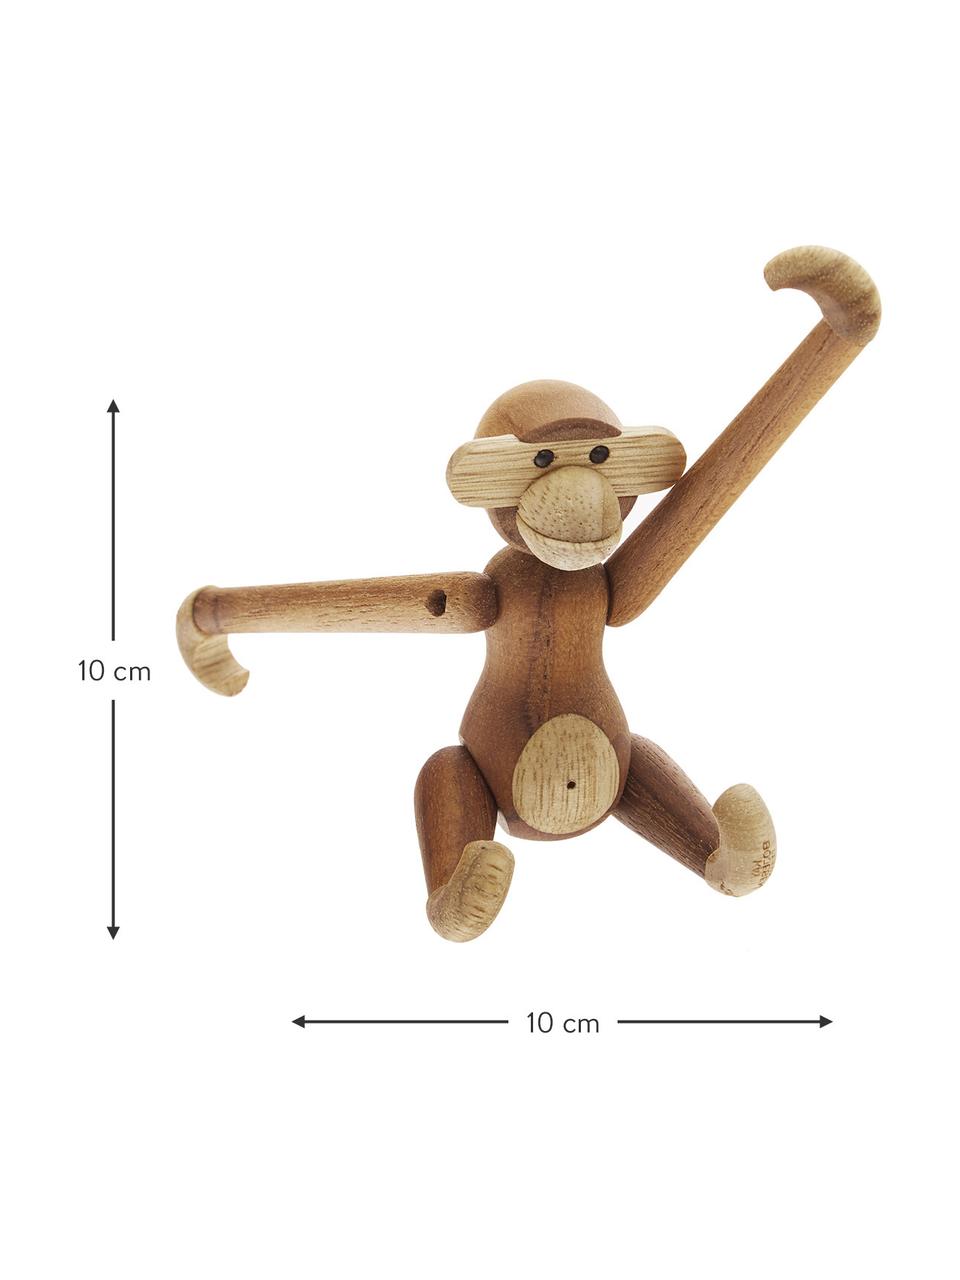 Designová dekorace z teakového dřeva Monkey, Lakované teakové dřevo, dřevo limba, Teakové dřevo, dřevo limba, Š 10 cm, V 10 cm